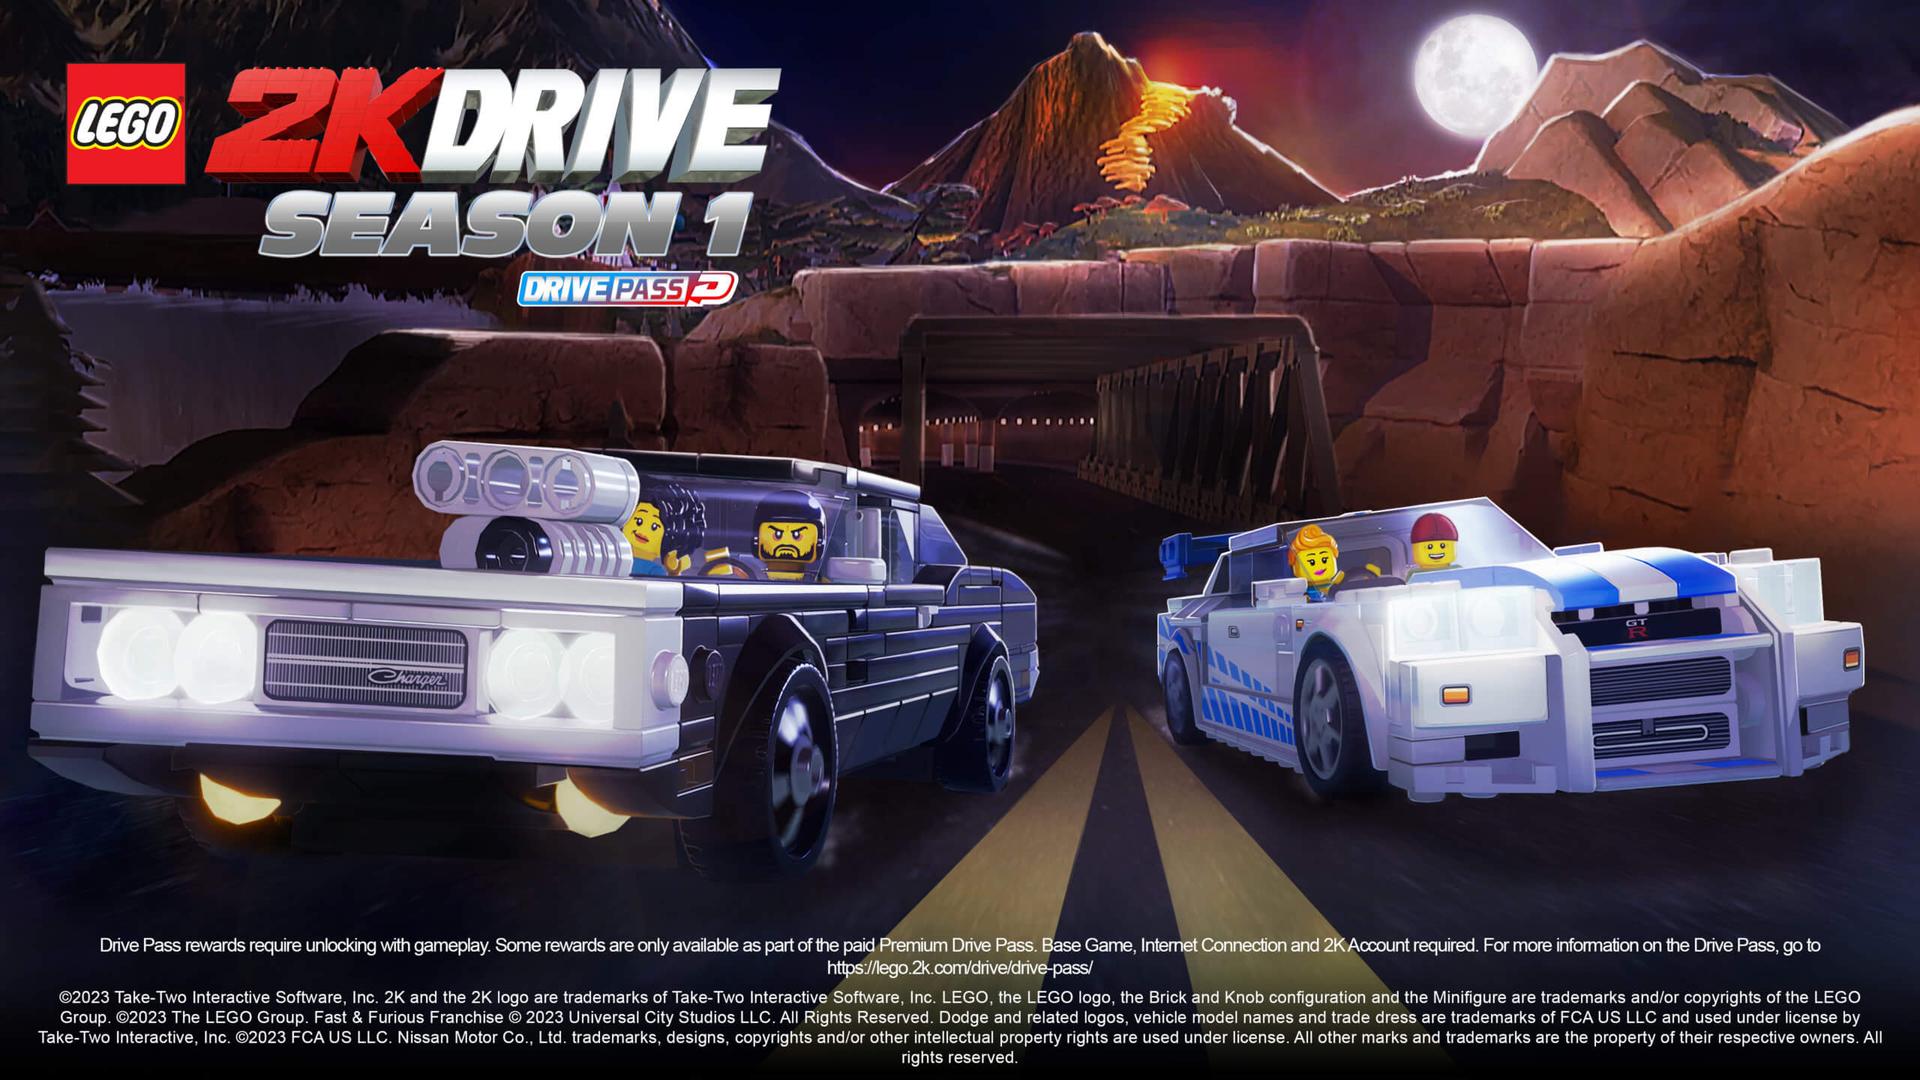 lego 2k drive drive pass season 1 key art